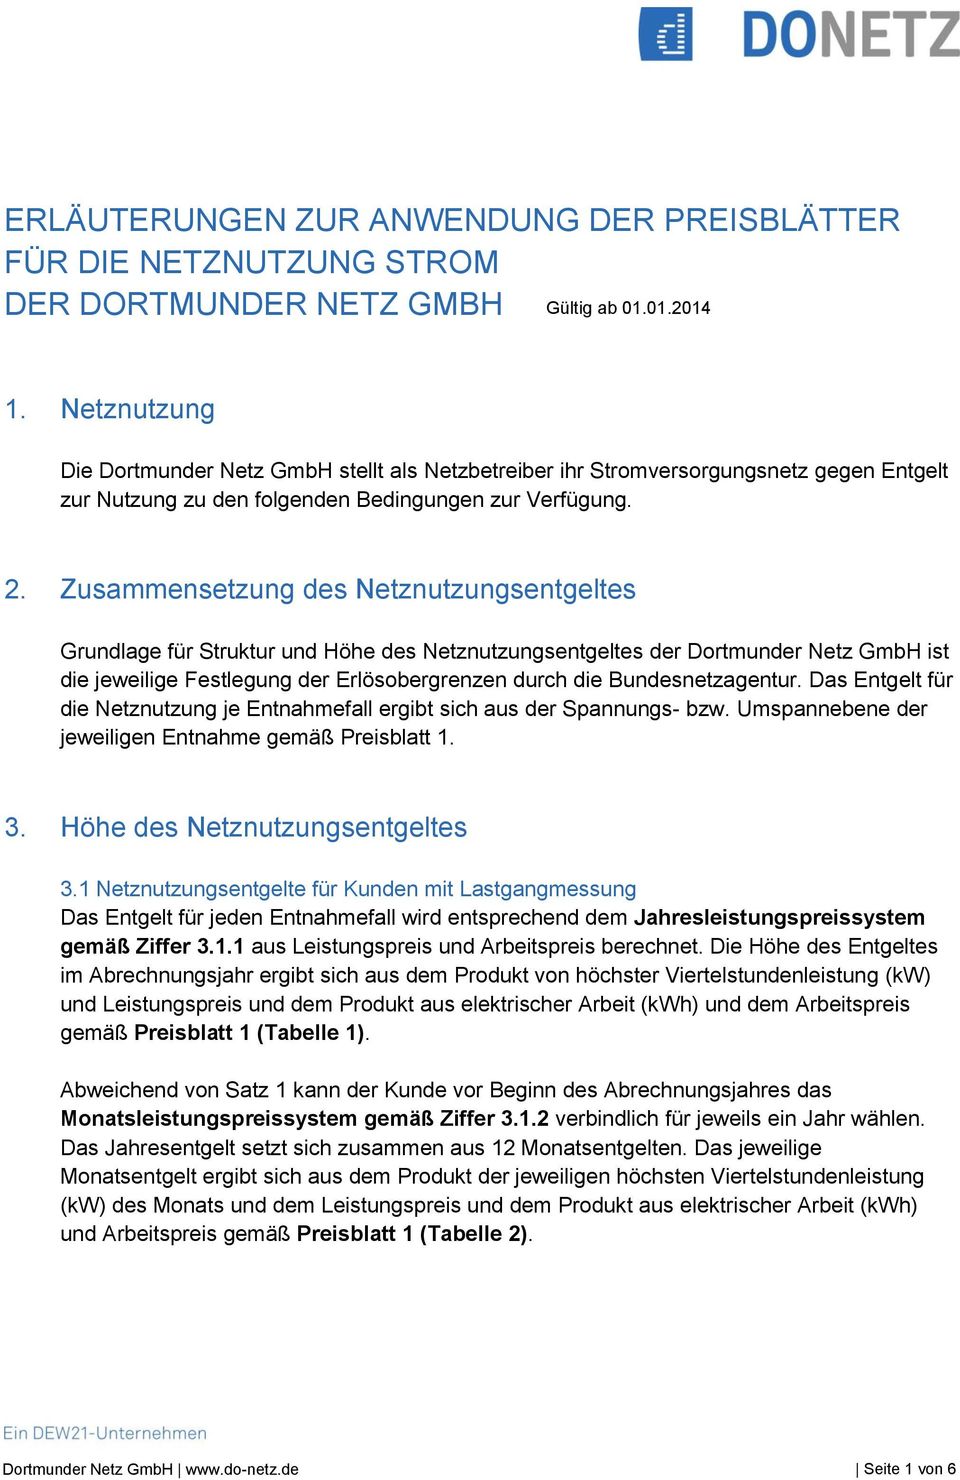 Zusammensetzung des Netznutzungsentgeltes Grundlage für Struktur und Höhe des Netznutzungsentgeltes der Dortmunder Netz GmbH ist die jeweilige Festlegung der Erlösobergrenzen durch die